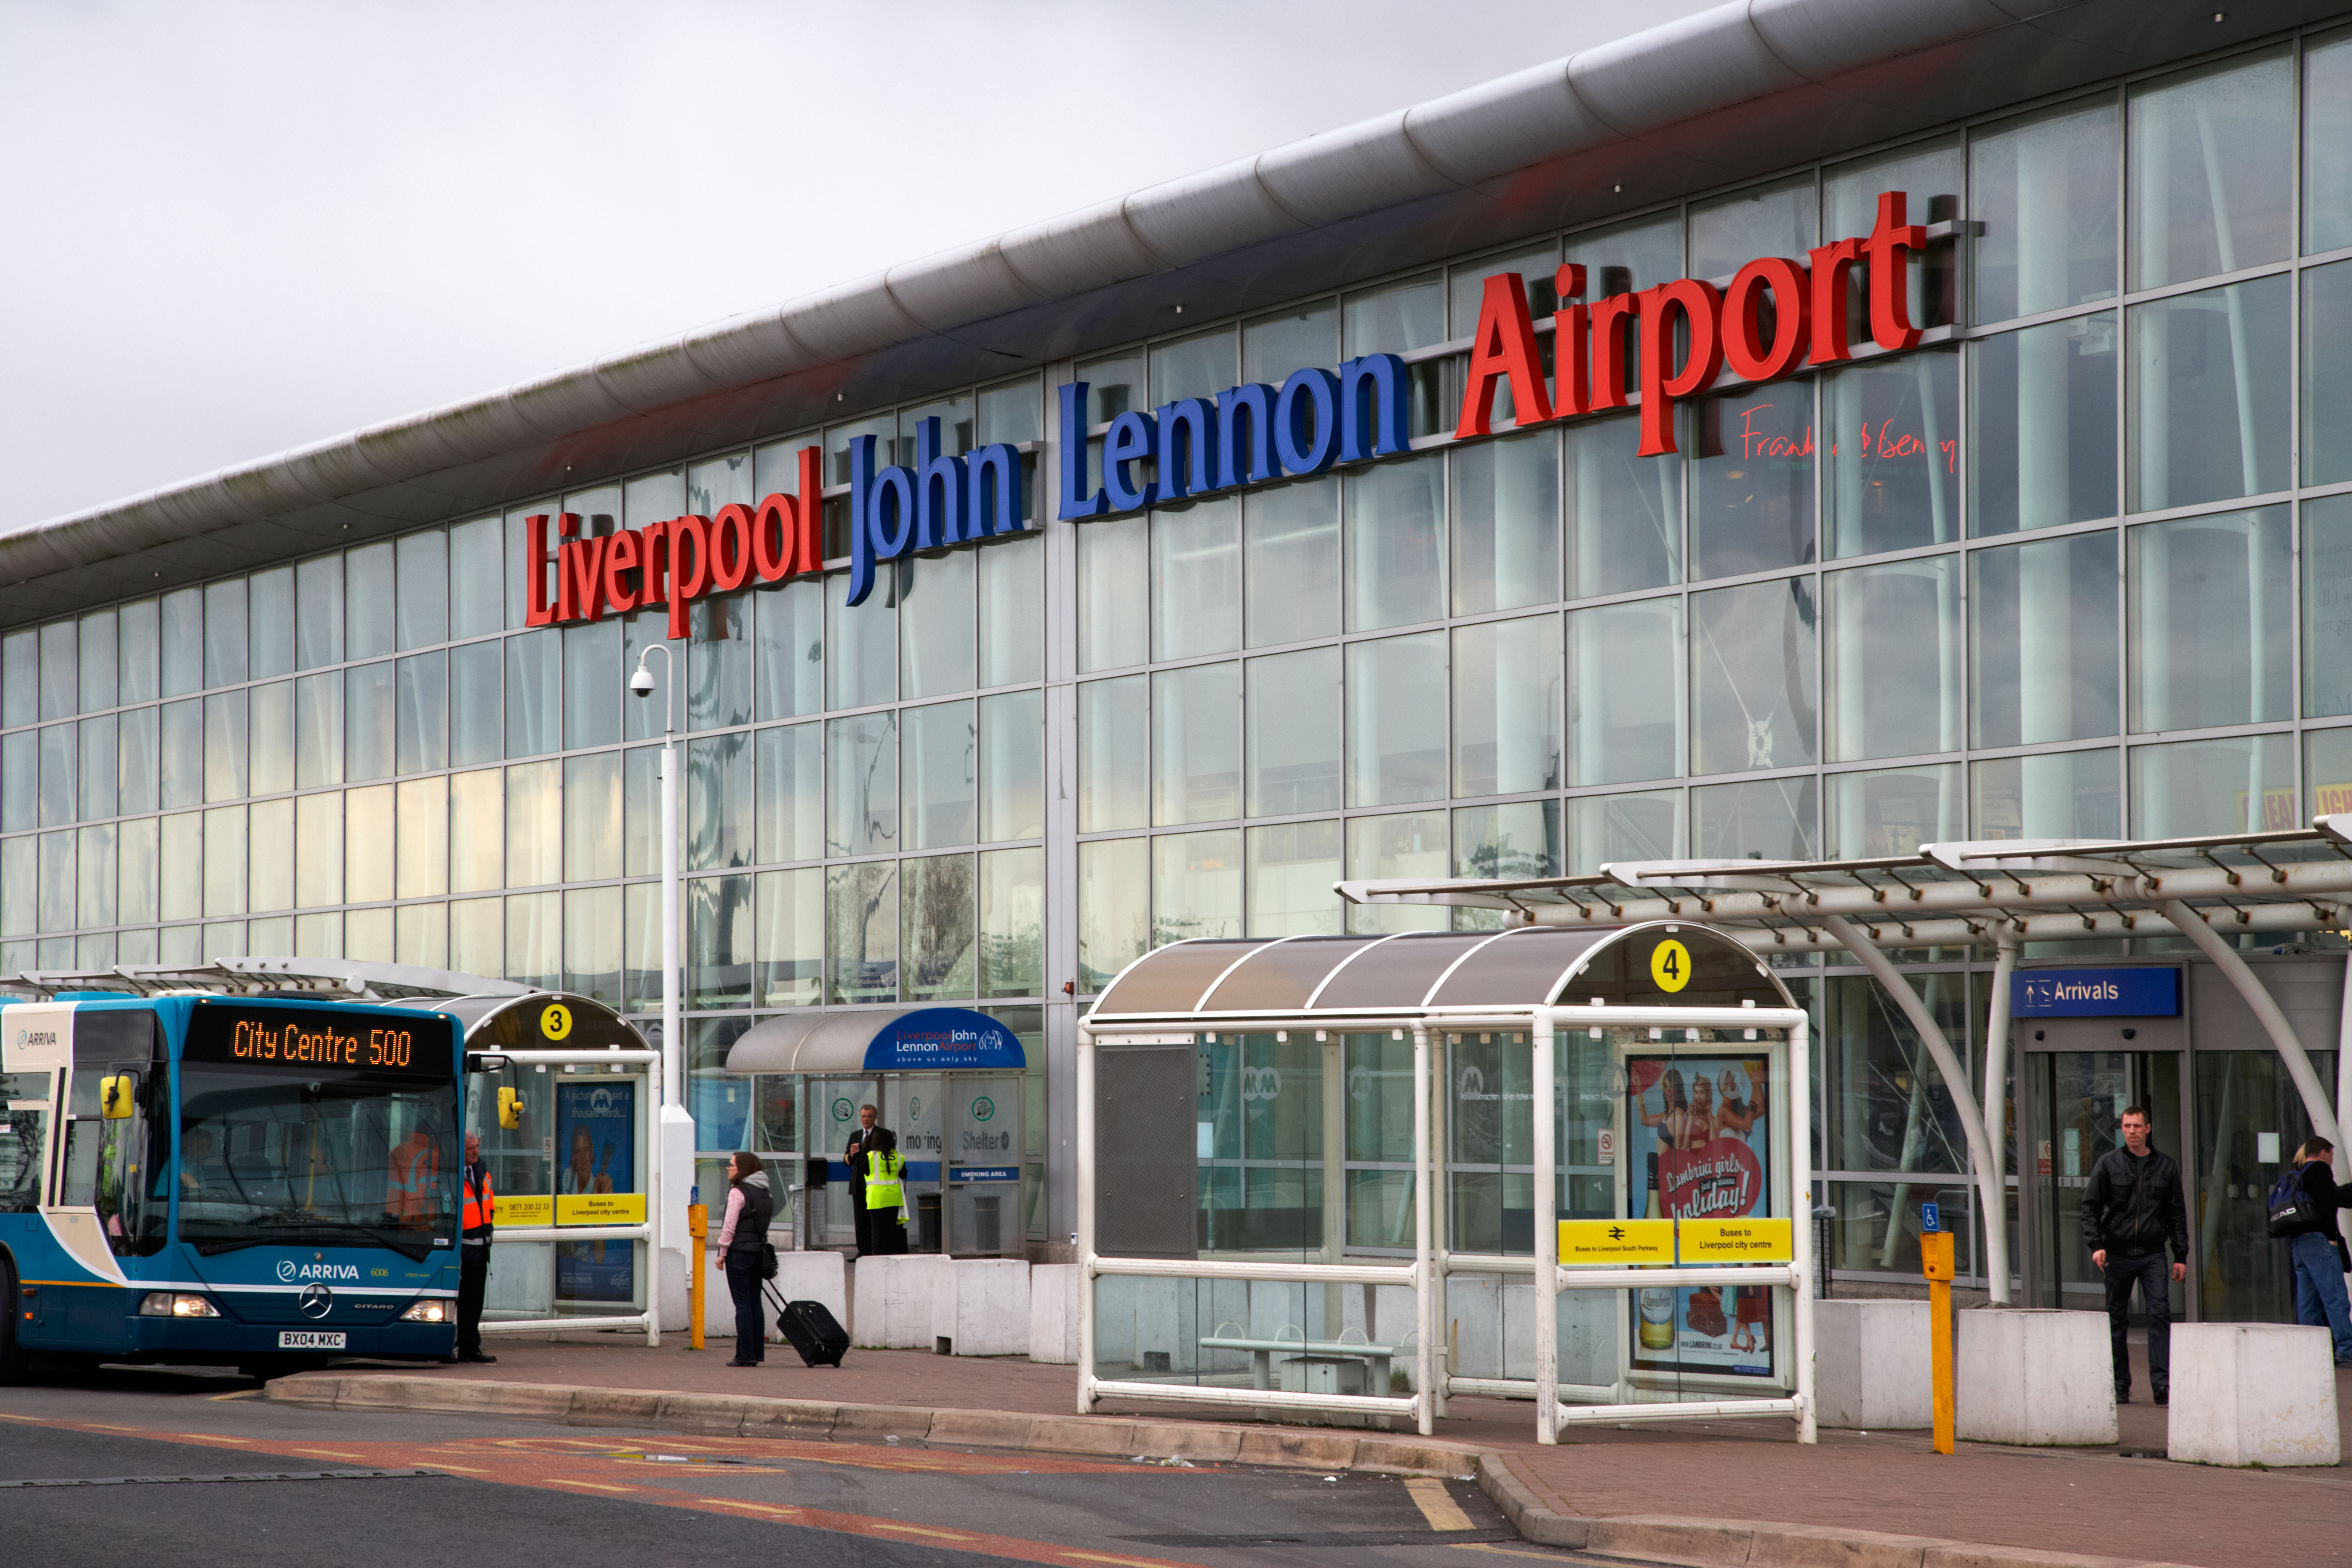 Die wenig bekannte Fluggesellschaft wird ihre Route am Liverpool John Lennon Airport um zusätzliche Dienste erweitern